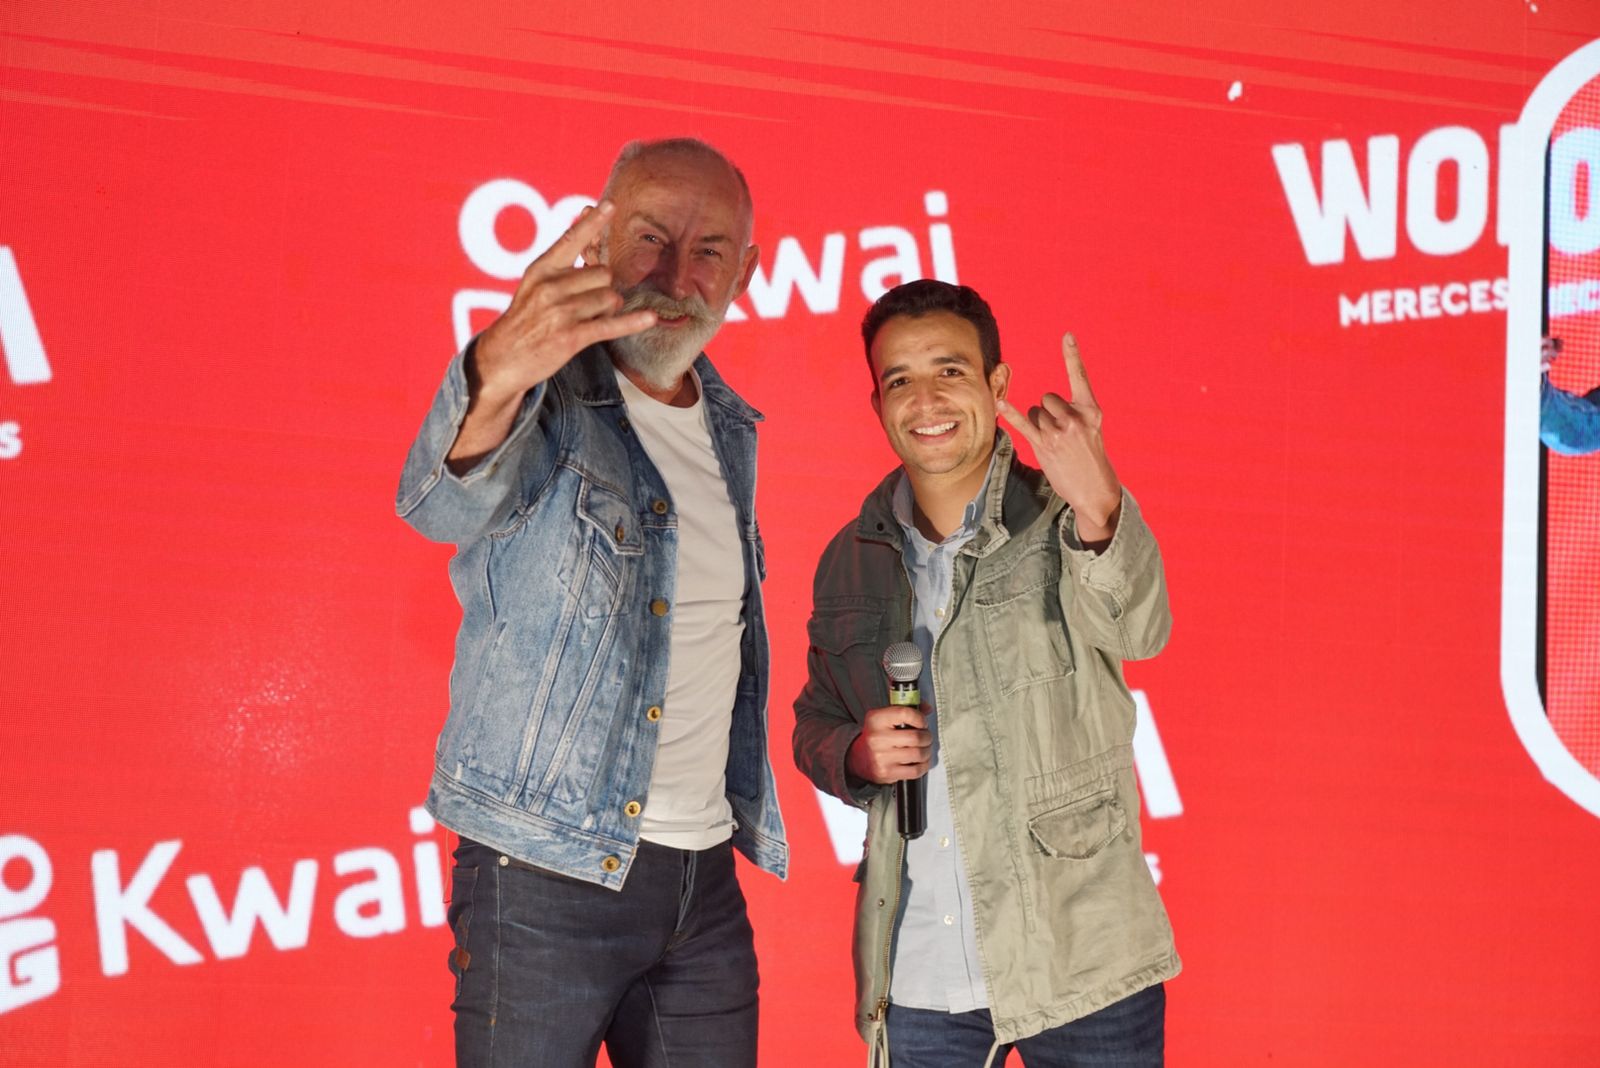 WOM y Kwai se unen para seguir impulsando la democratización de la conectividad  y generación de contenido en Colombia